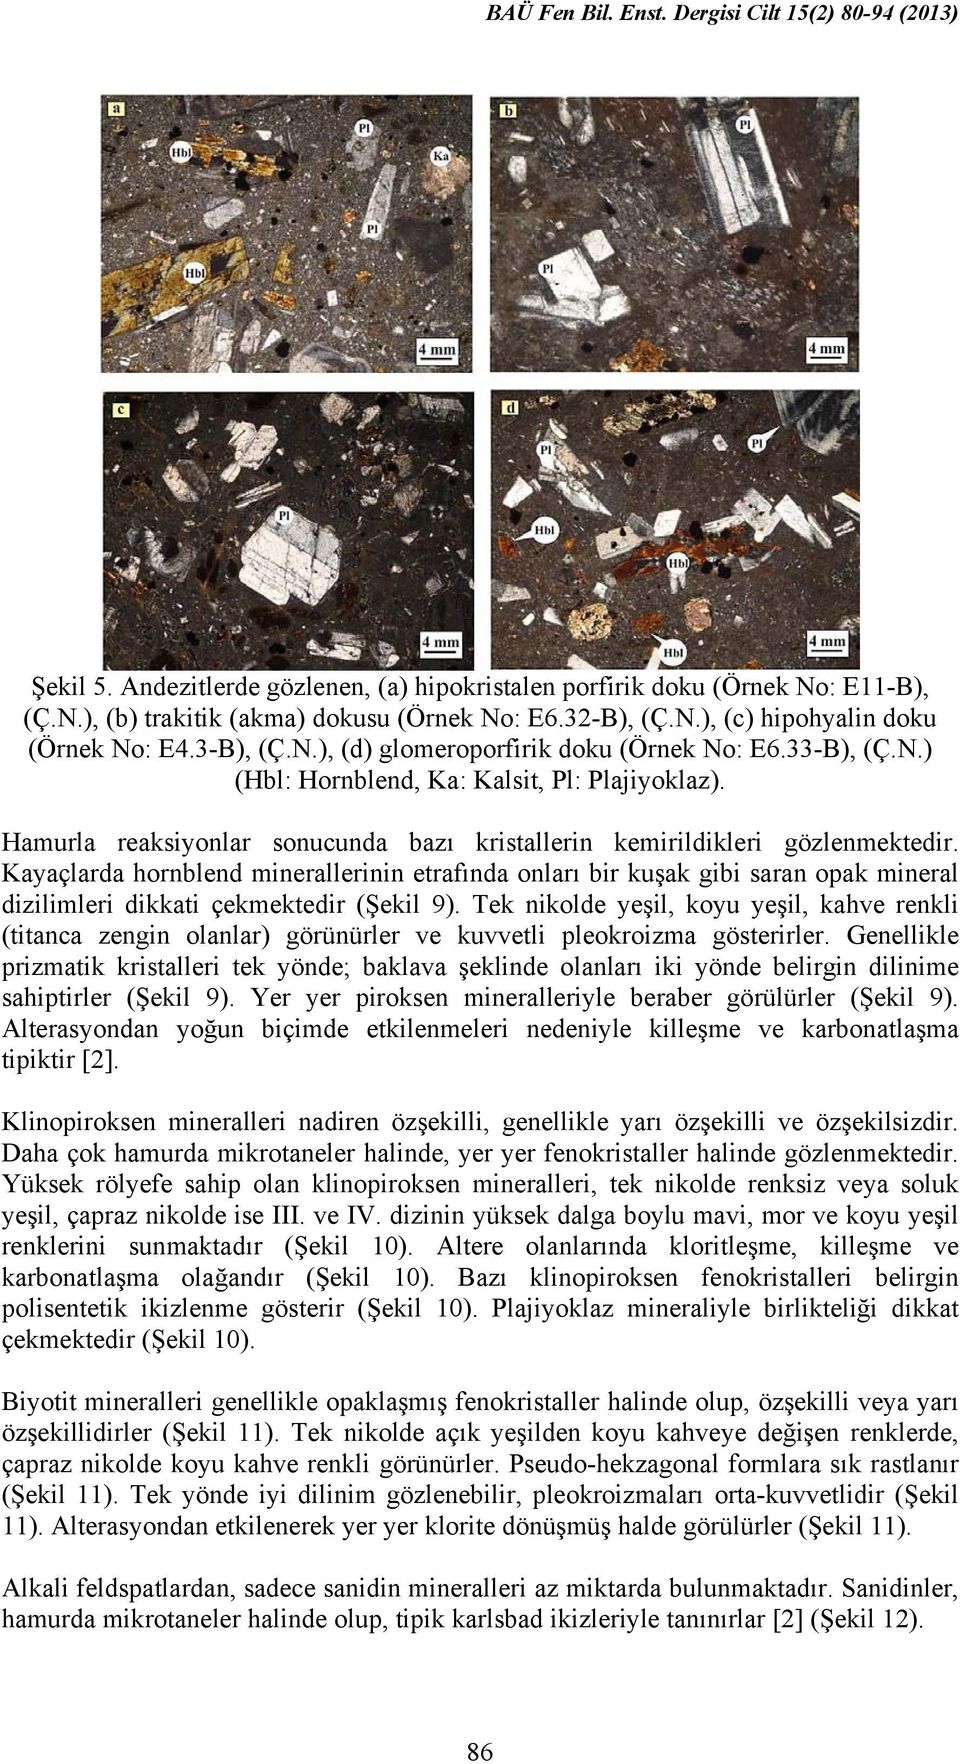 Kayaçlarda hornblend minerallerinin etrafında onları bir kuşak gibi saran opak mineral dizilimleri dikkati çekmektedir (Şekil 9).